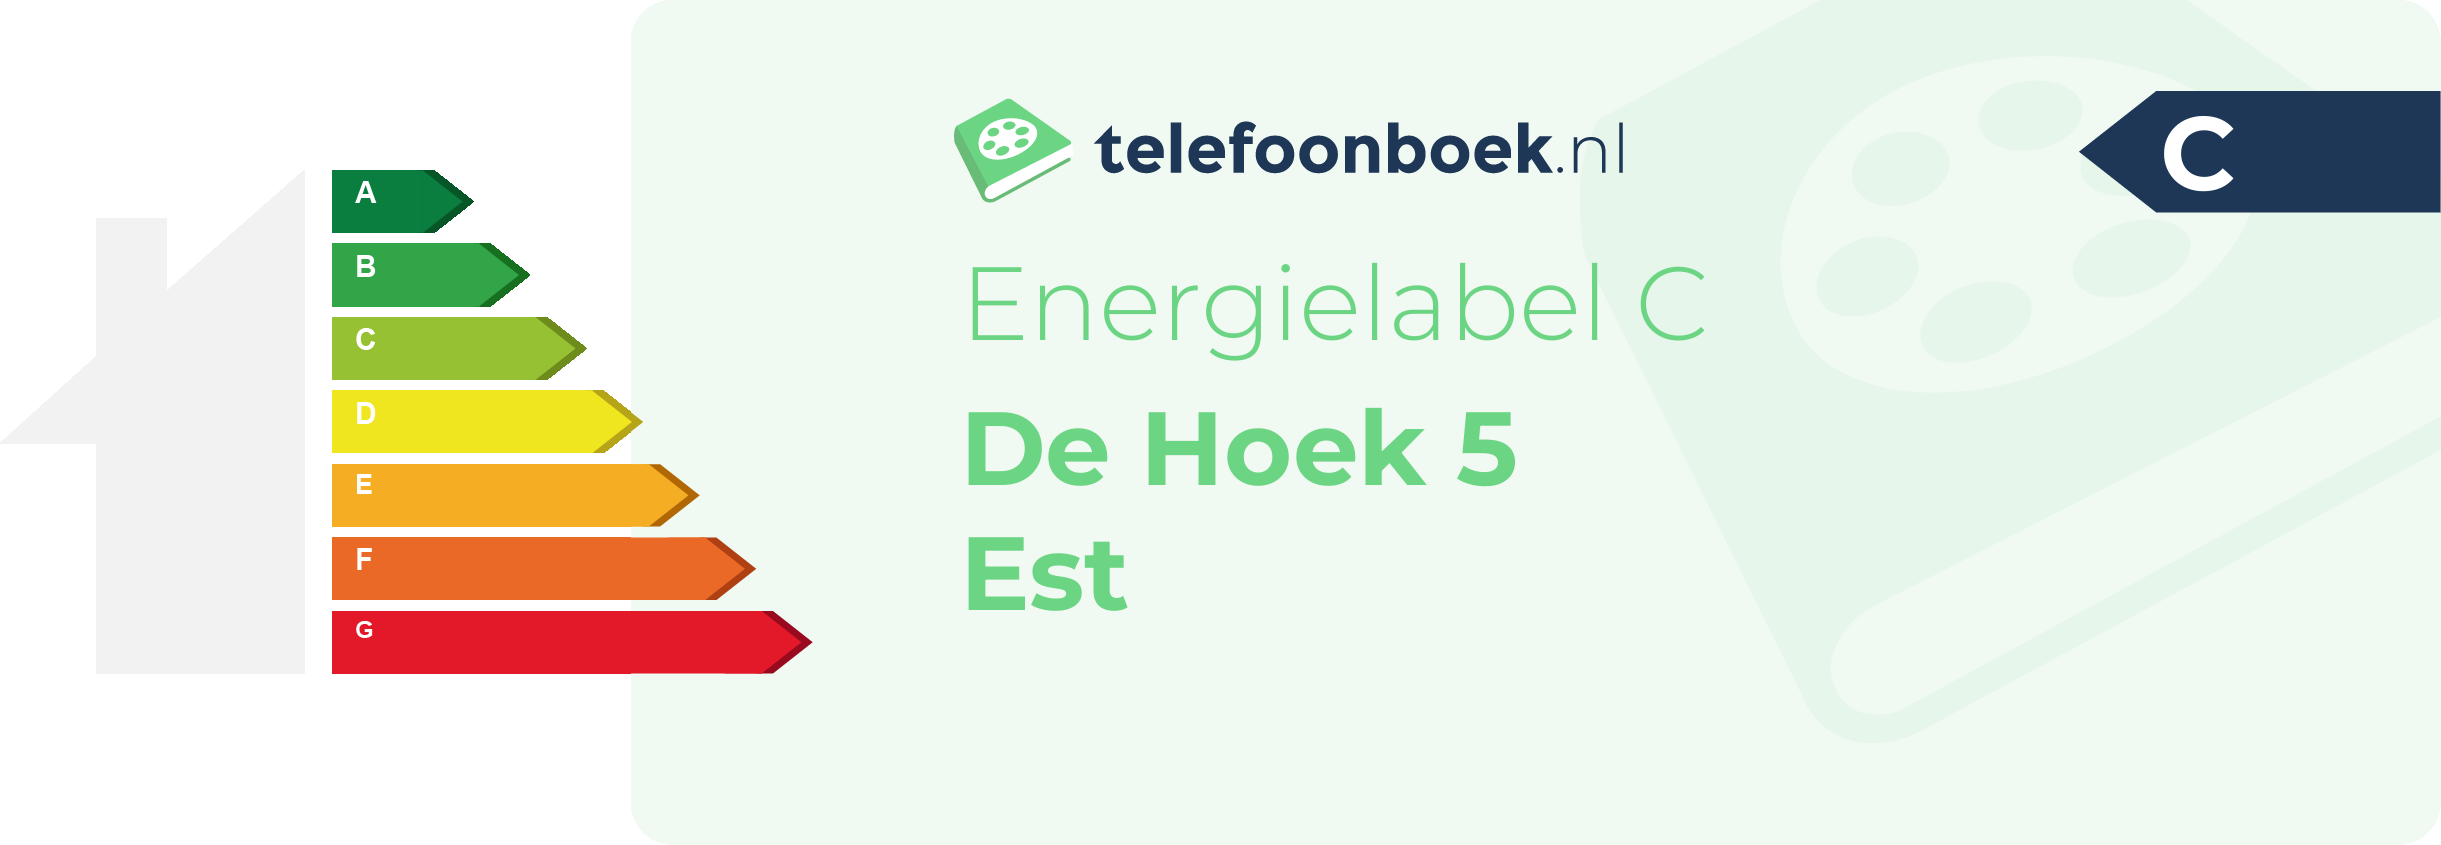 Energielabel De Hoek 5 Est